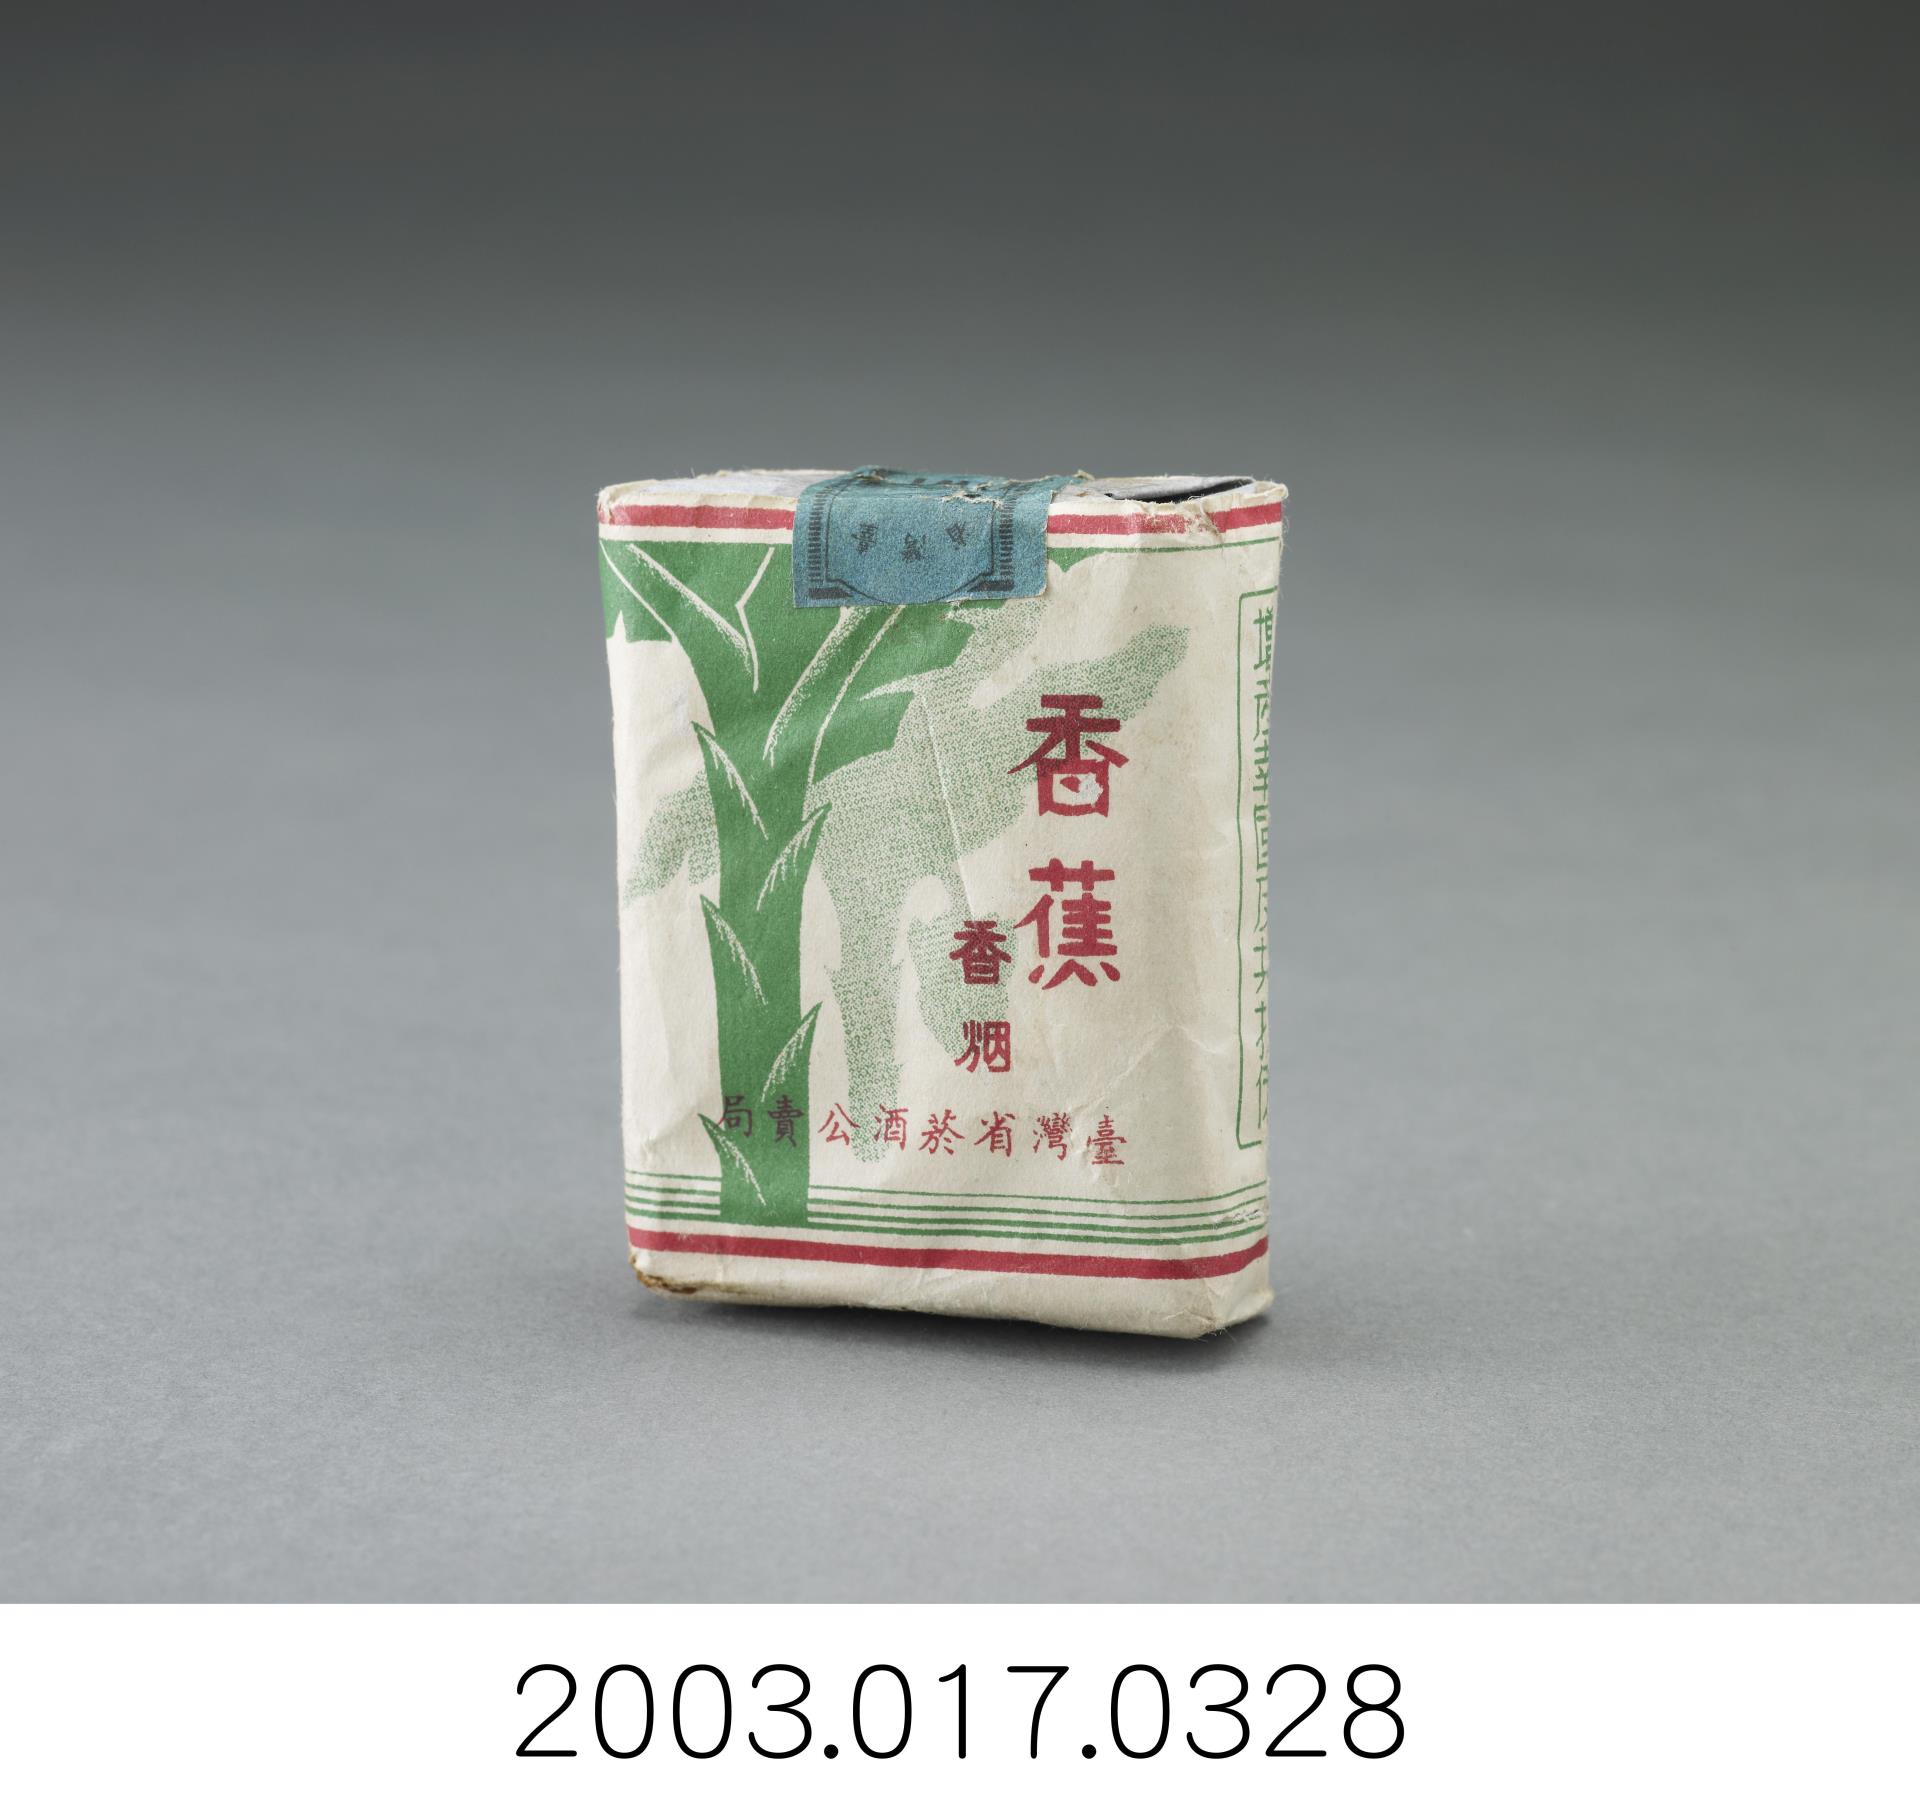 臺灣省菸酒公賣局香蕉牌香菸盒 (共2張)